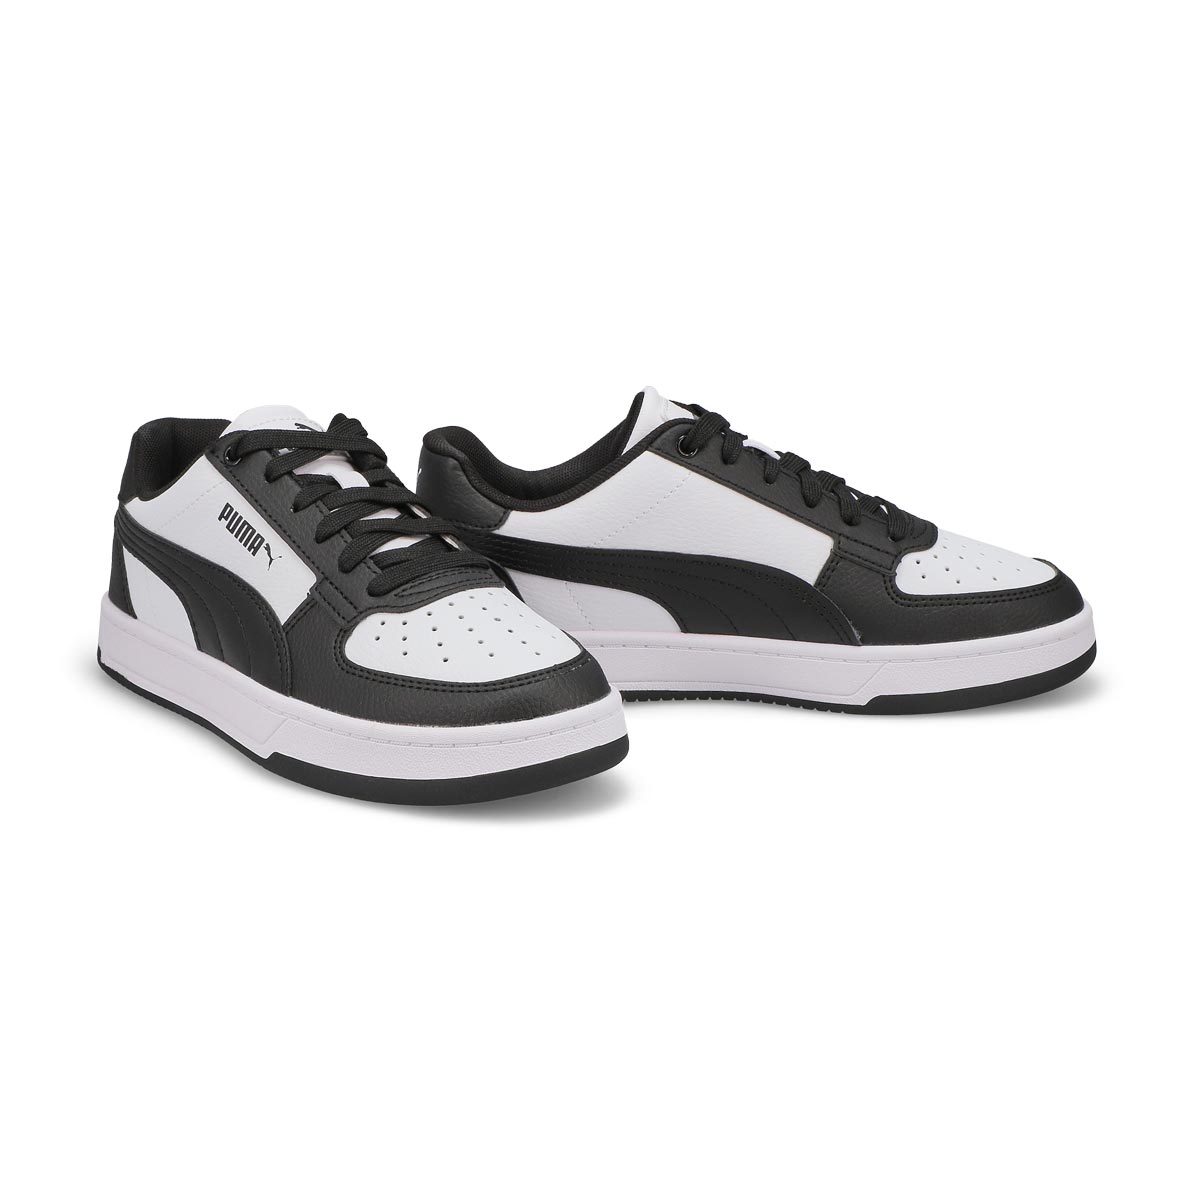 Kids Caven 2.0 Jr Lace Up Sneaker - Black/White